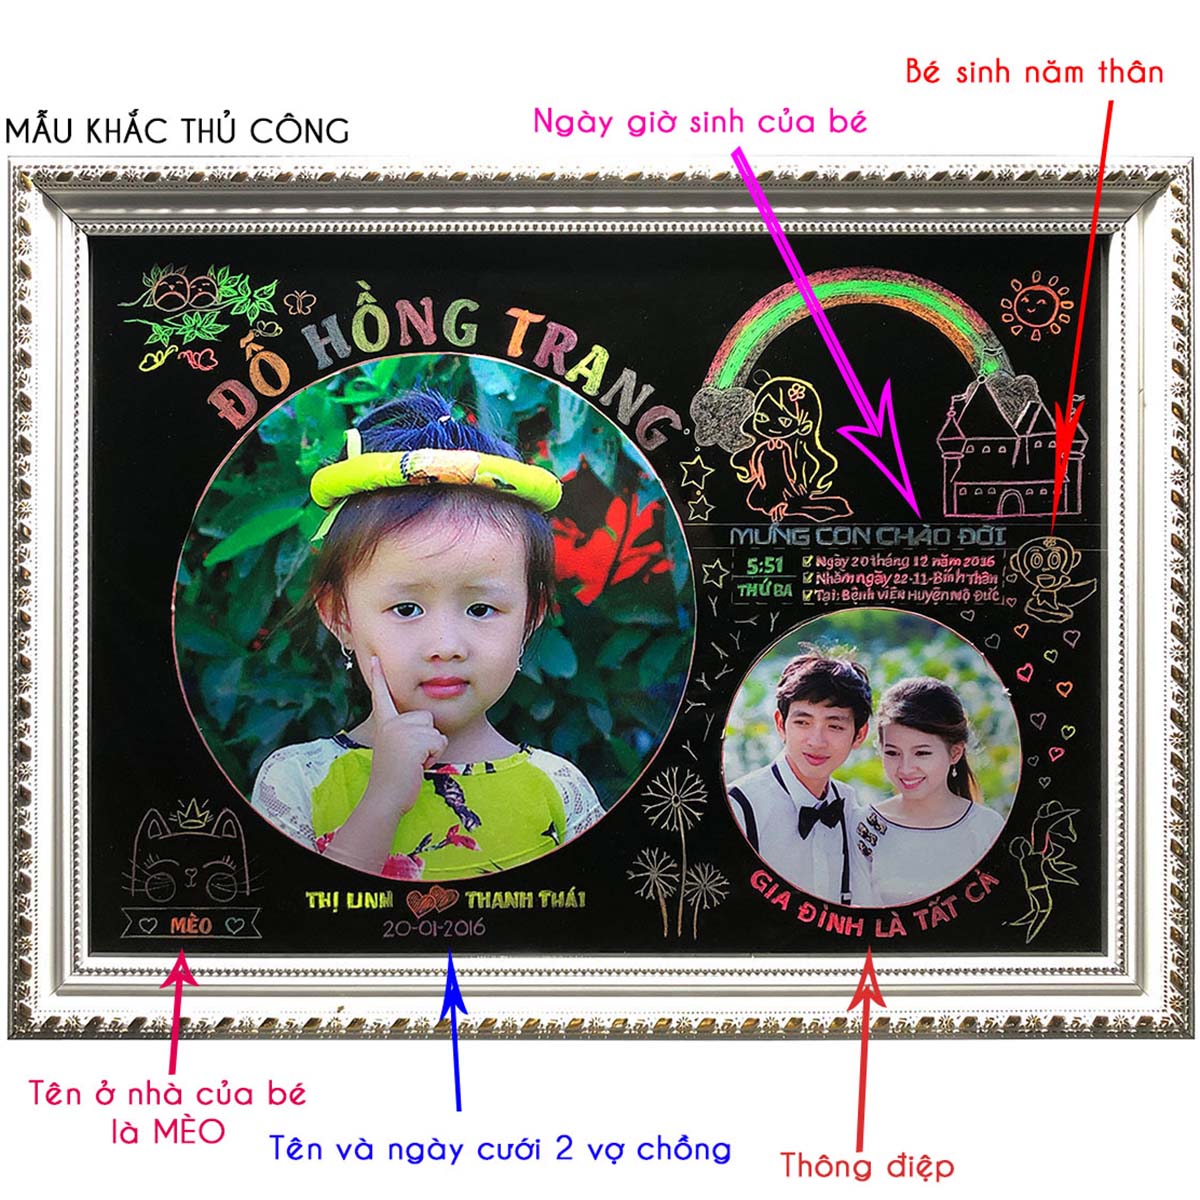 Chia Sẻ Kinh Nghiệm  Học Hỏi Photoshop cc  Share  Trọn bộ Vector Chibi  Sinh nhật Bé  Tải Miễn Phí